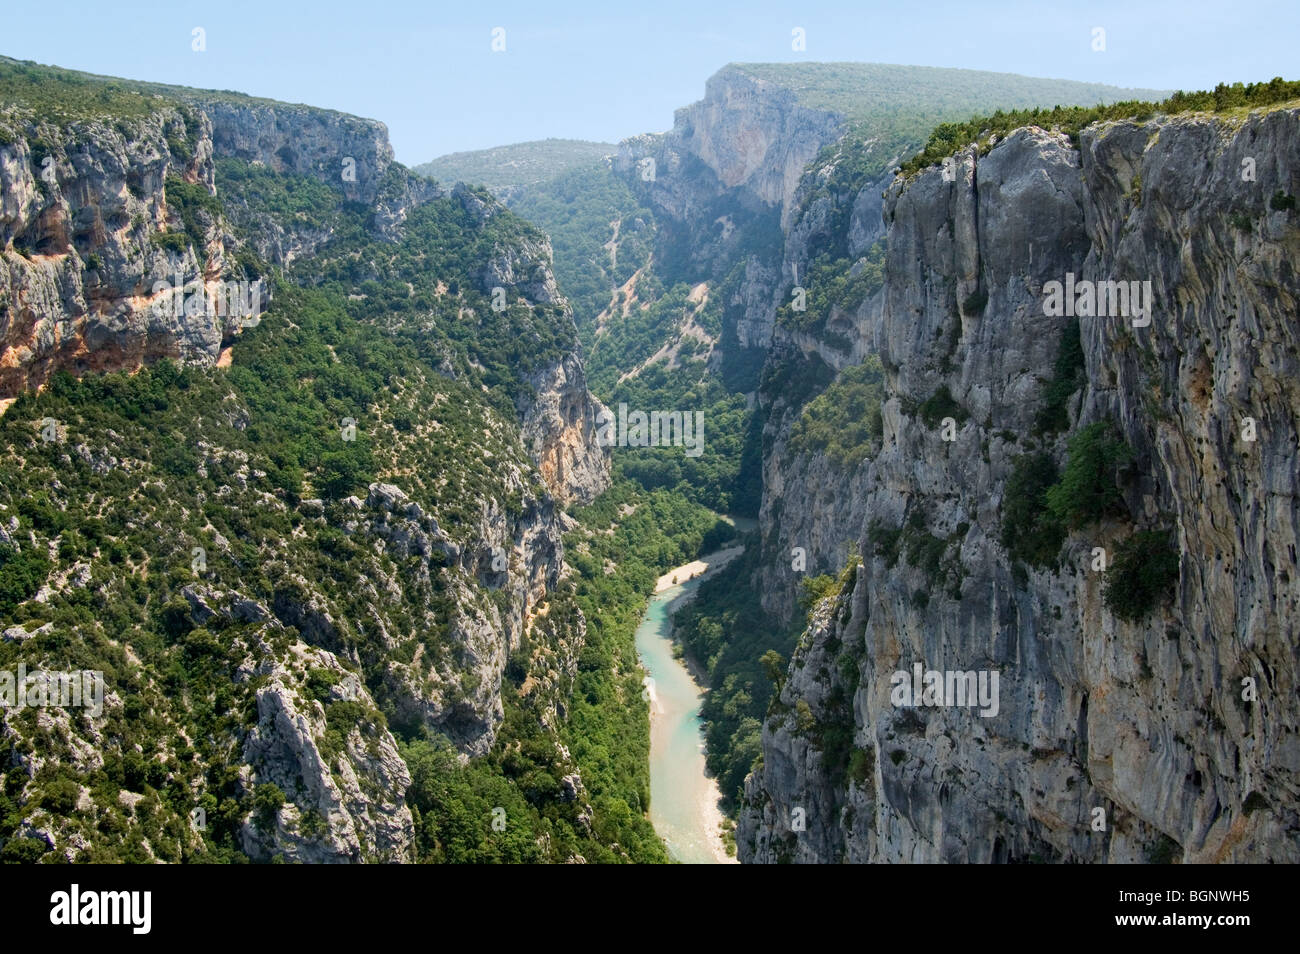 Los escarpados acantilados de piedra caliza del cañón Gorges du Verdon / Verdon Gorge, Alpes-de-Haute-Provence, Provenza, Francia Foto de stock